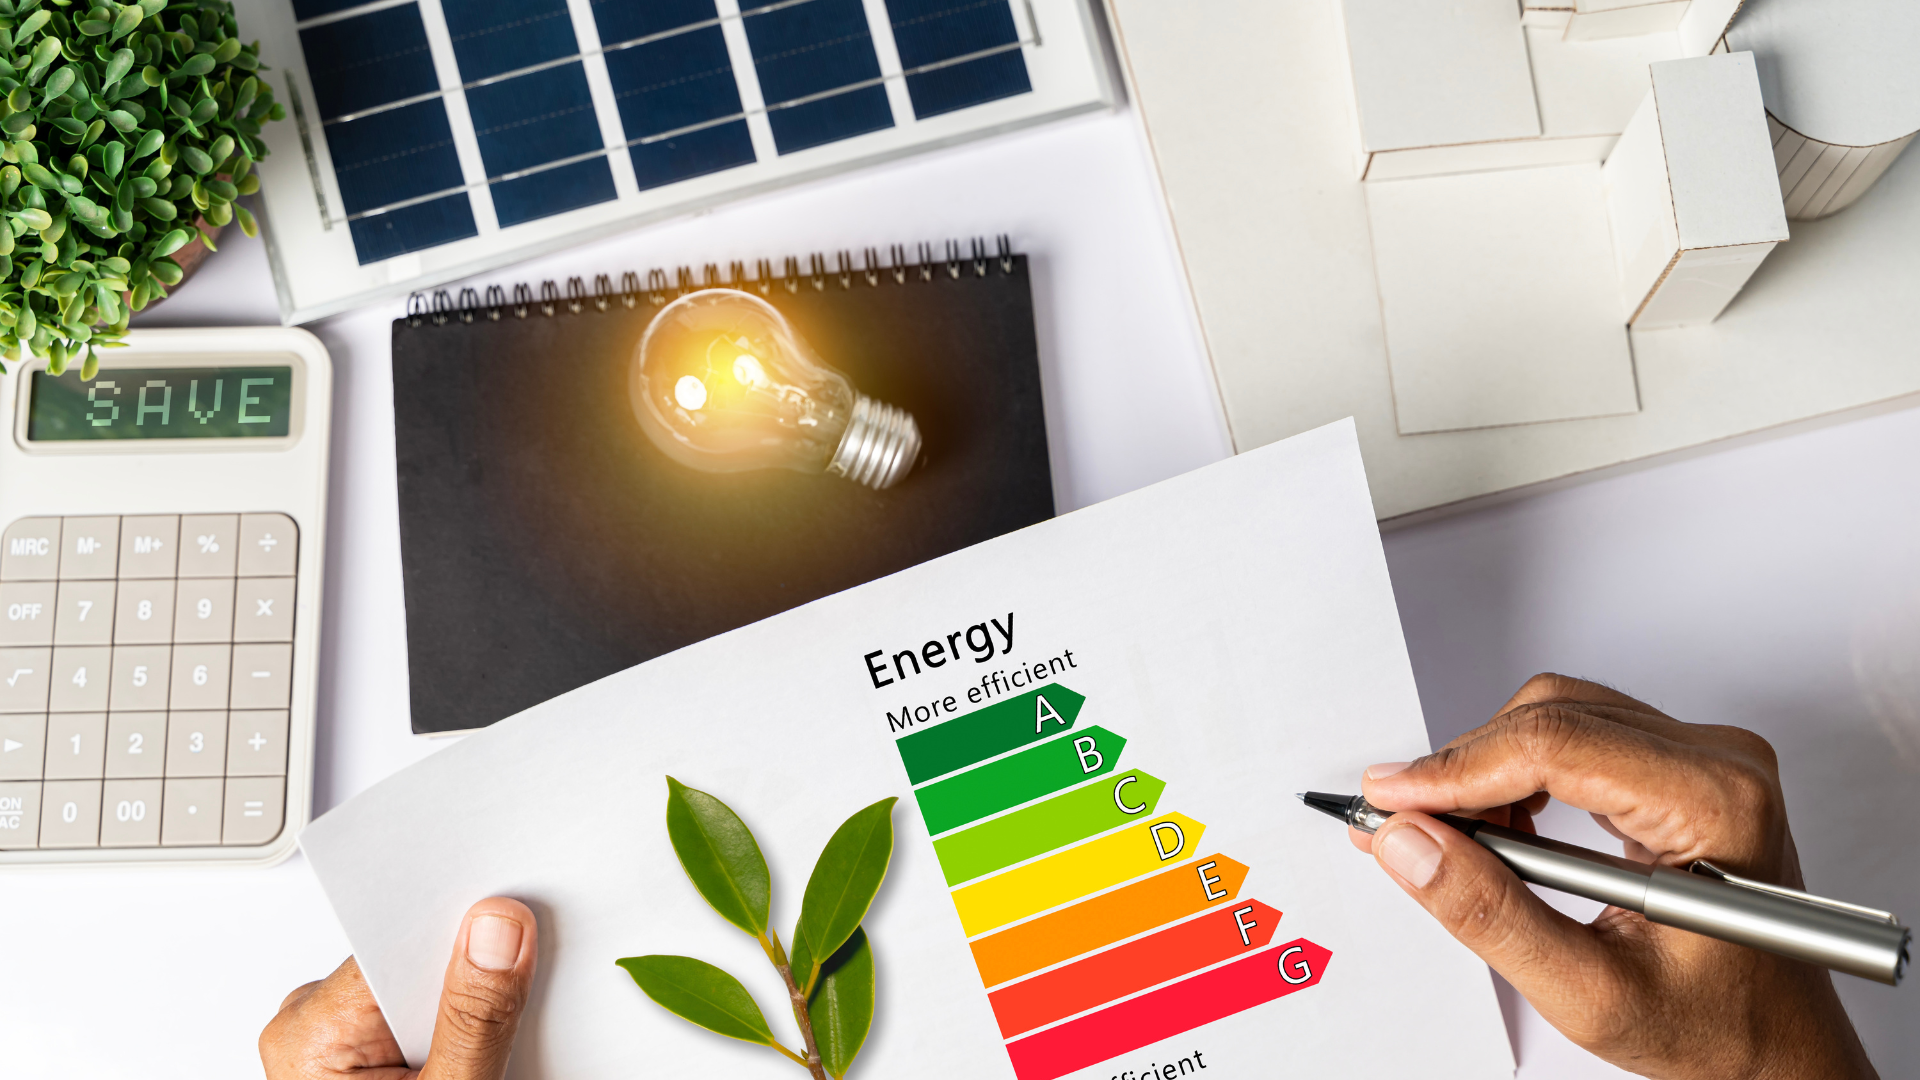 Cuatro aspectos clave para el uso eficiente de energía en oficinas